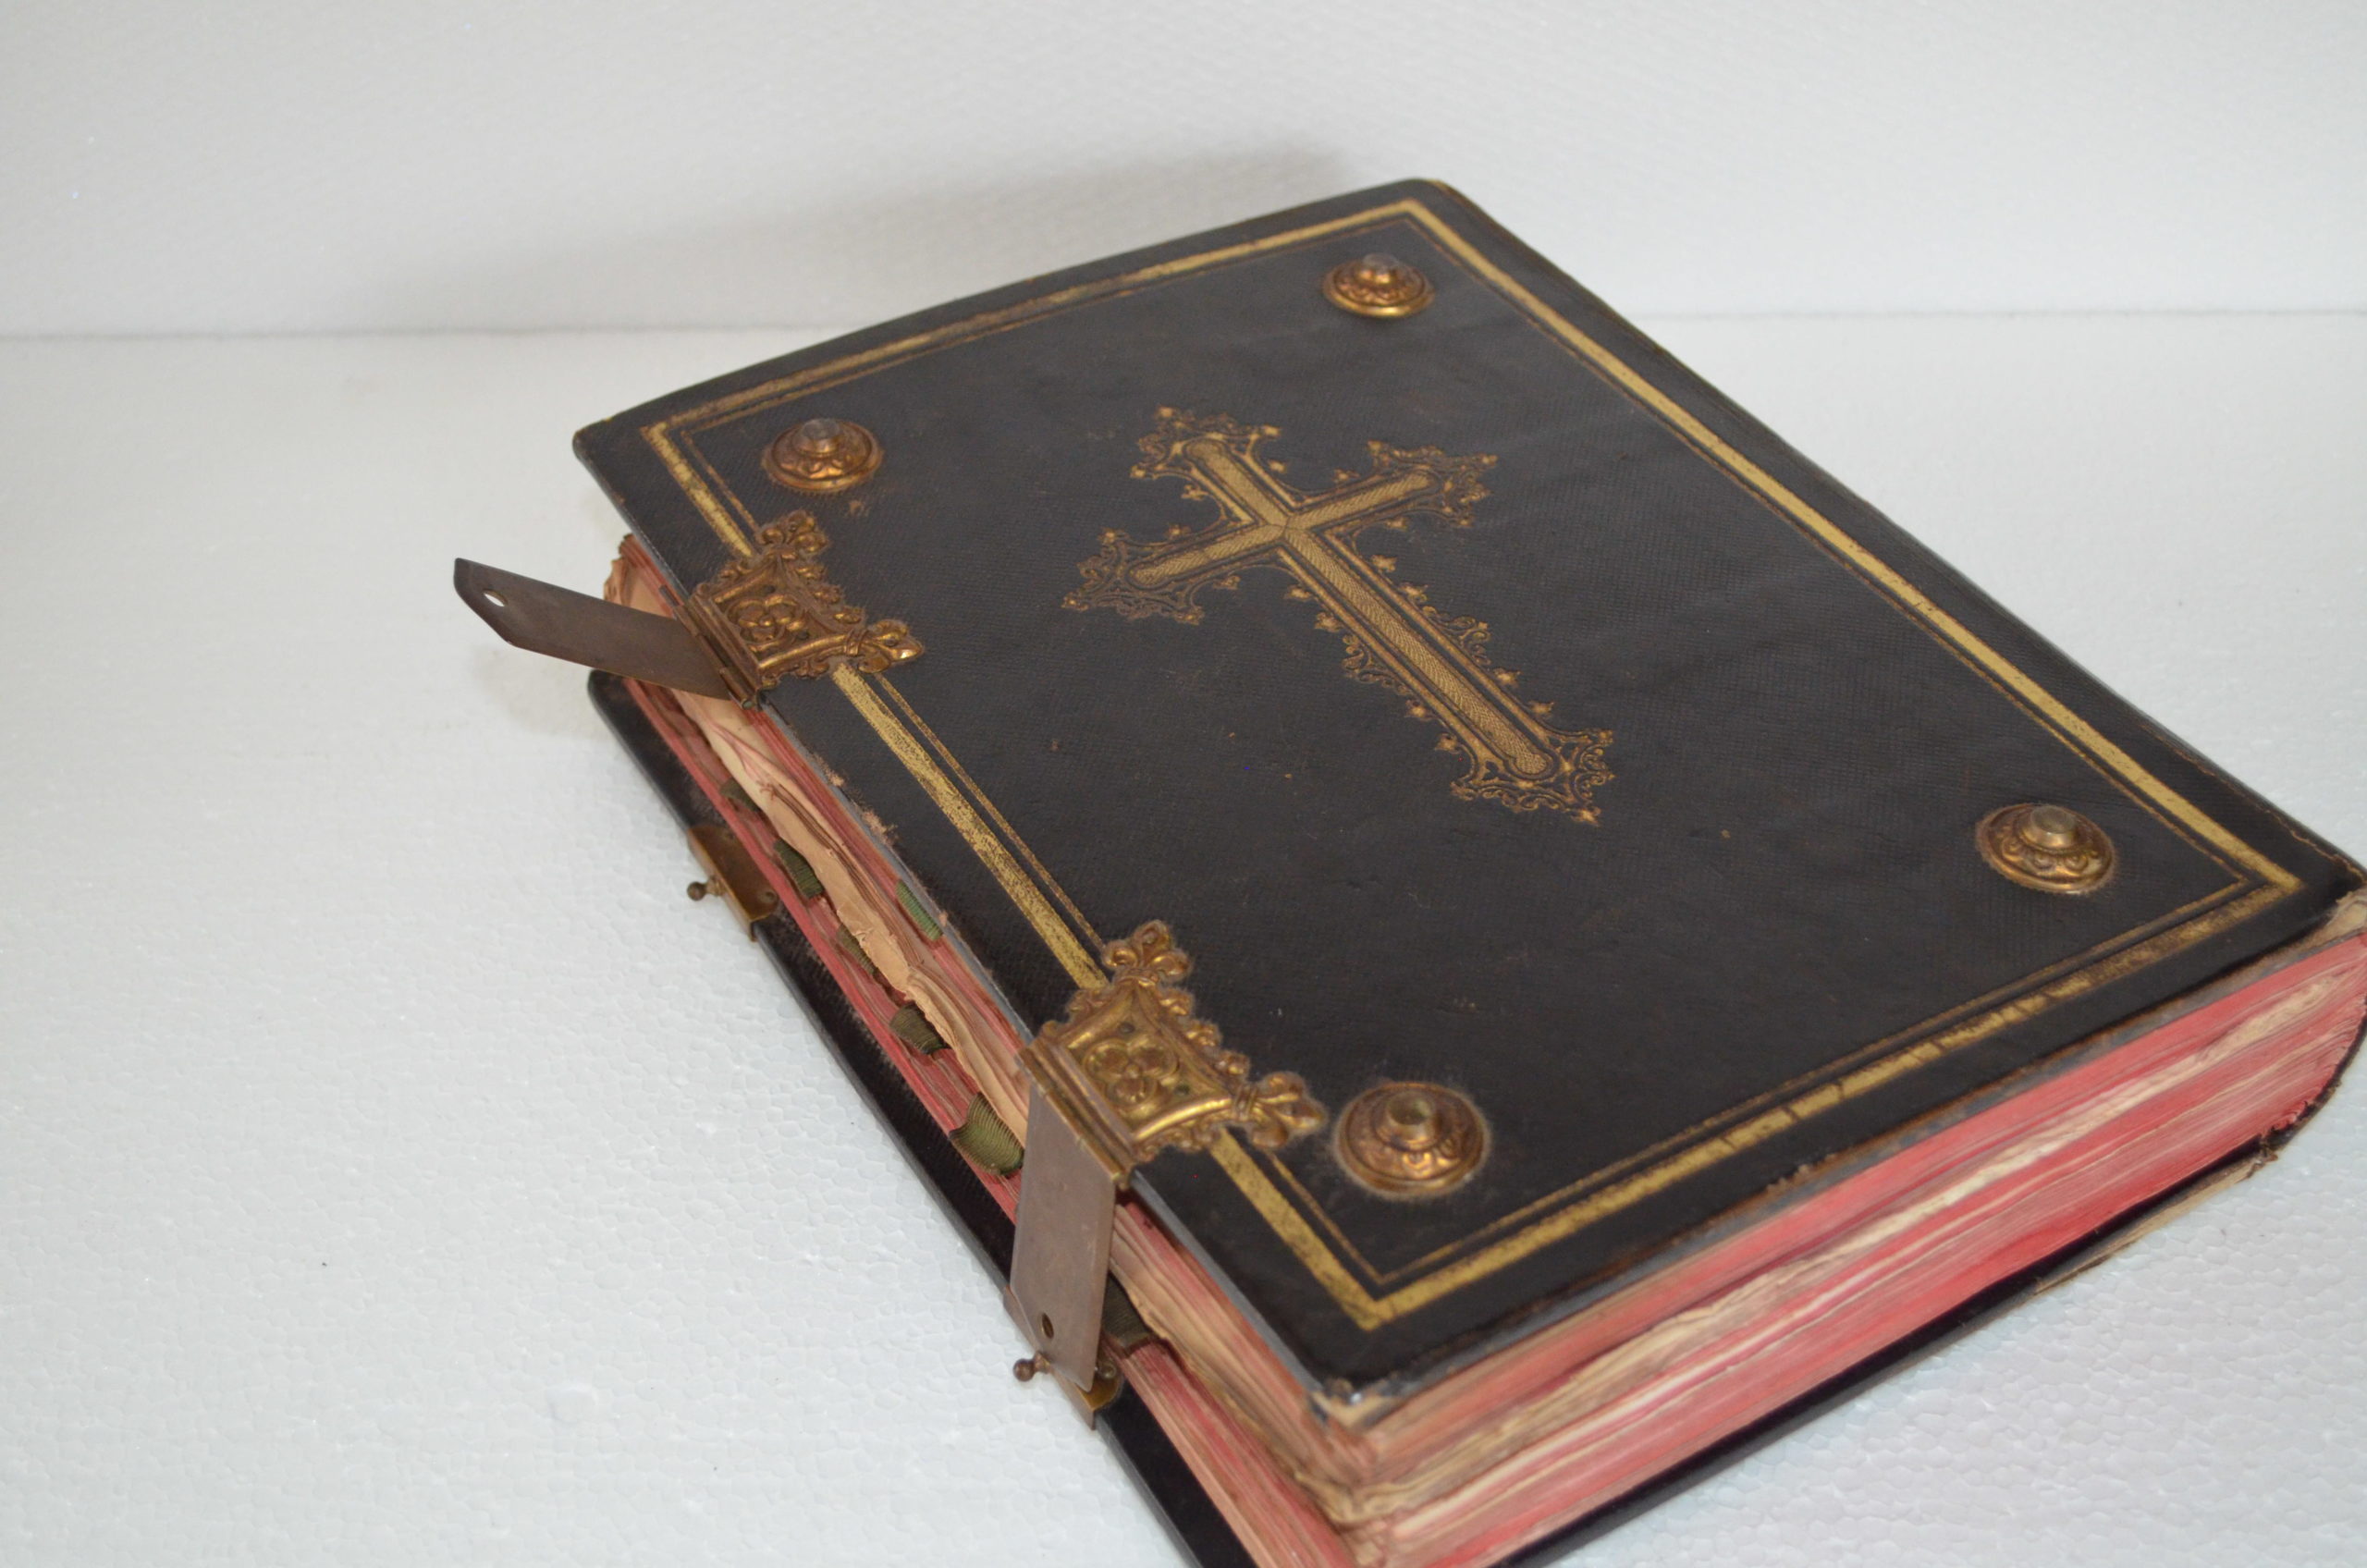 Missale Romanum Maße L. 24,5 cm, B. 6,8 cm, H. 31,5 cm